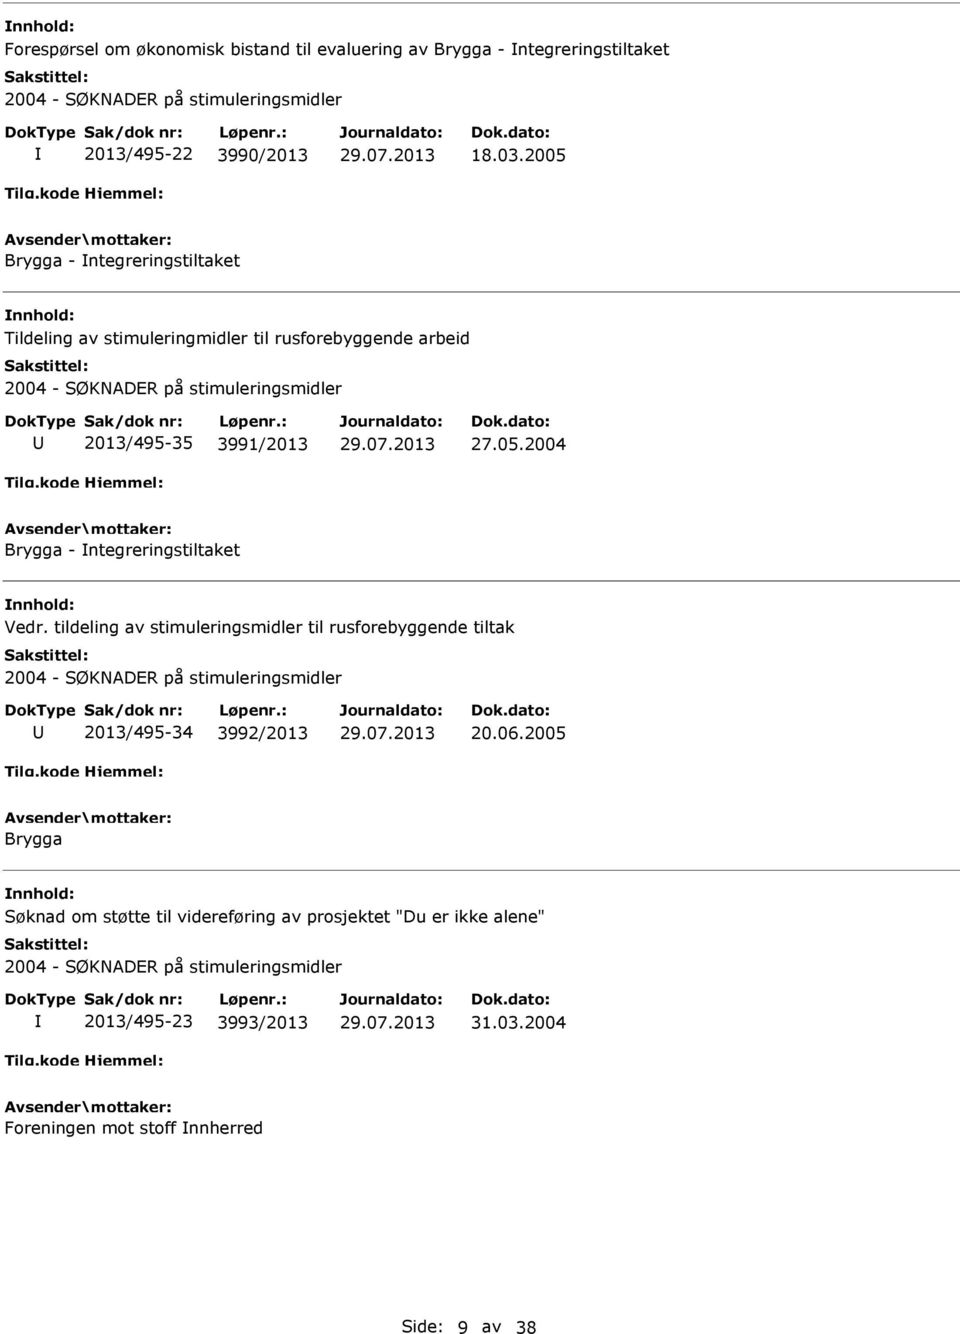 tildeling av stimuleringsmidler til rusforebyggende tiltak 2013/495-34 3992/2013 20.06.